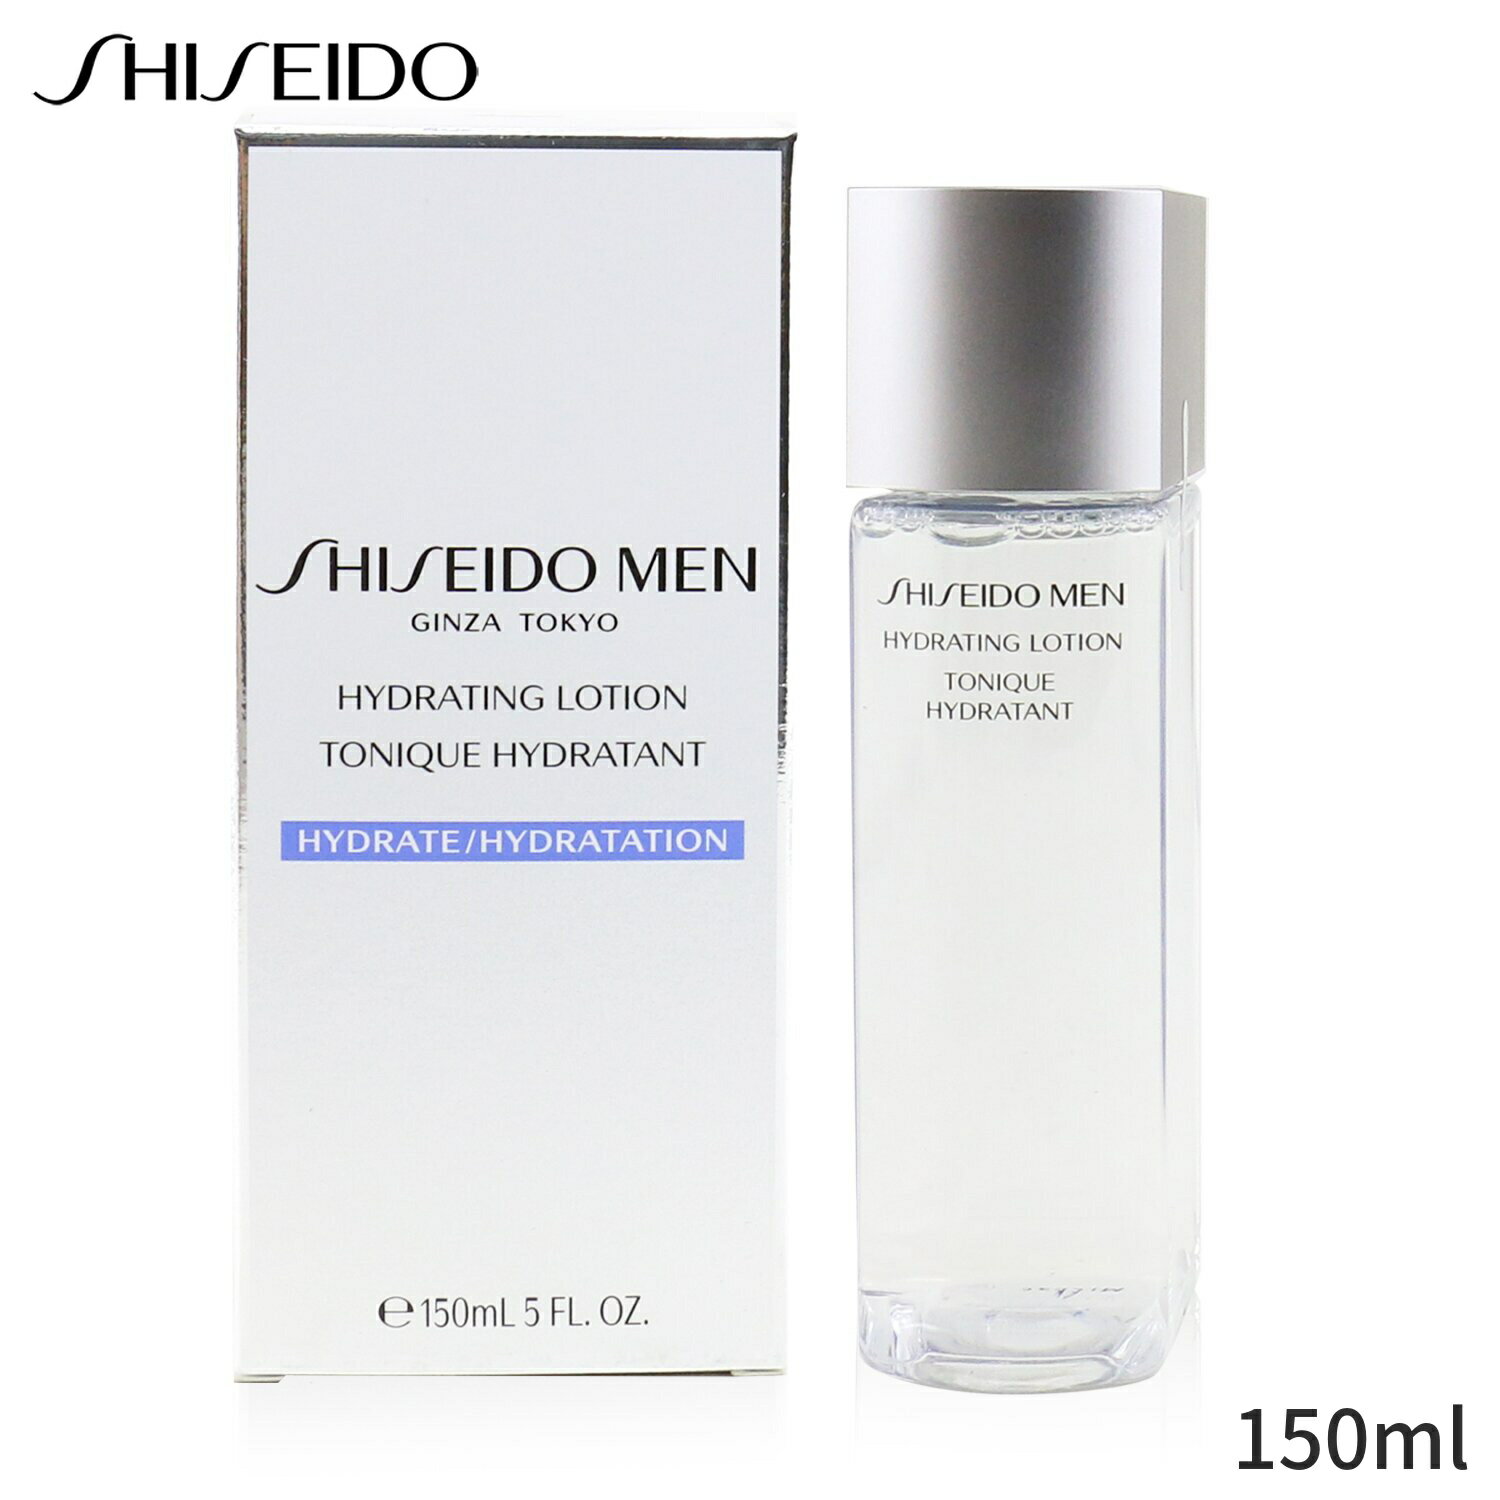 資生堂 保湿・トリートメント Shiseido メン ハイドレイティング ローション 150ml メンズ スキンケア 男性用 基礎化粧品 フェイス 父の日 プレゼント ギフト 2022 人気 ブランド コスメ